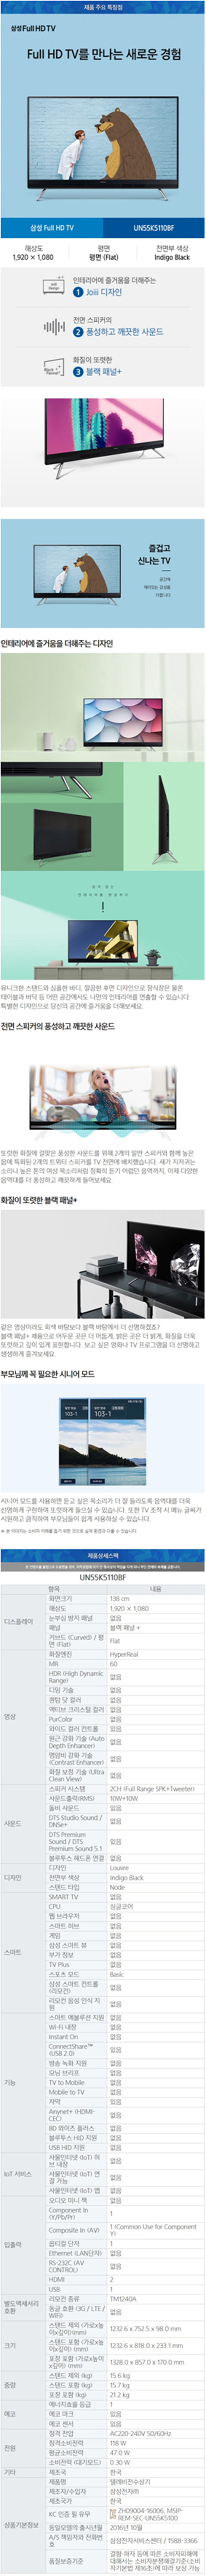 중랑케이블 - 삼성 55인치 LED TV (UN55K5110BF) 상세보기